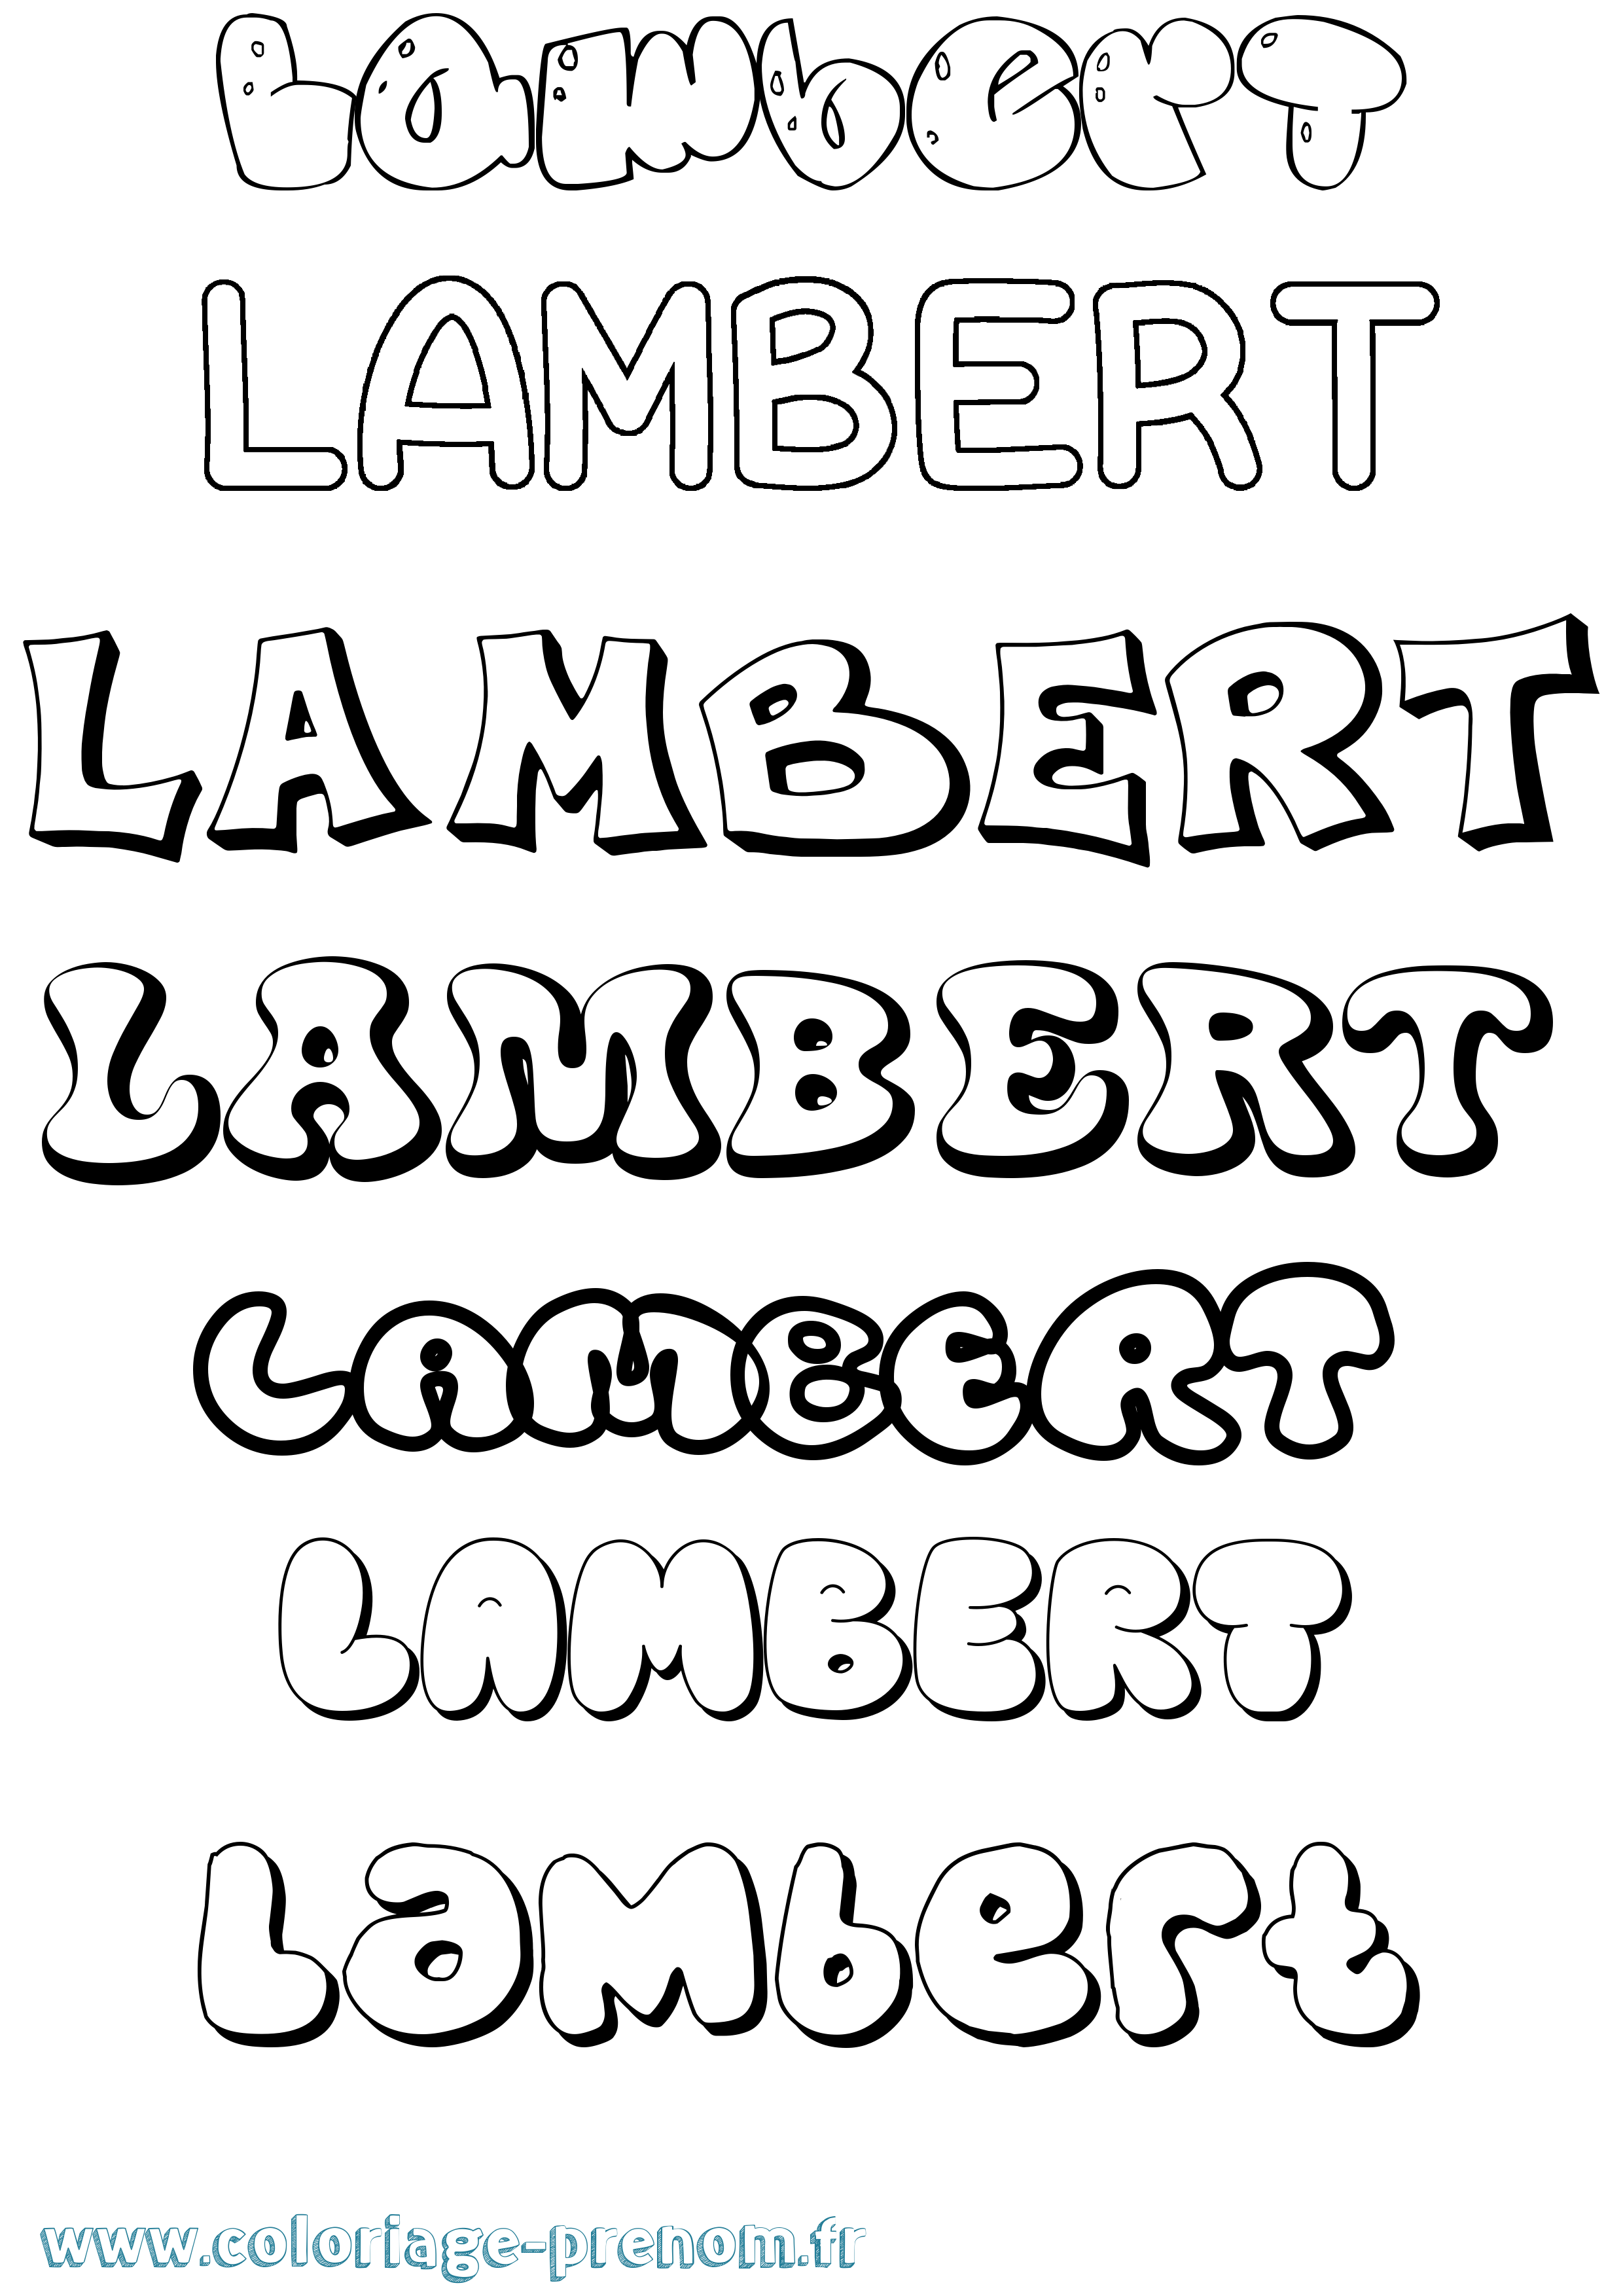 Coloriage prénom Lambert Bubble